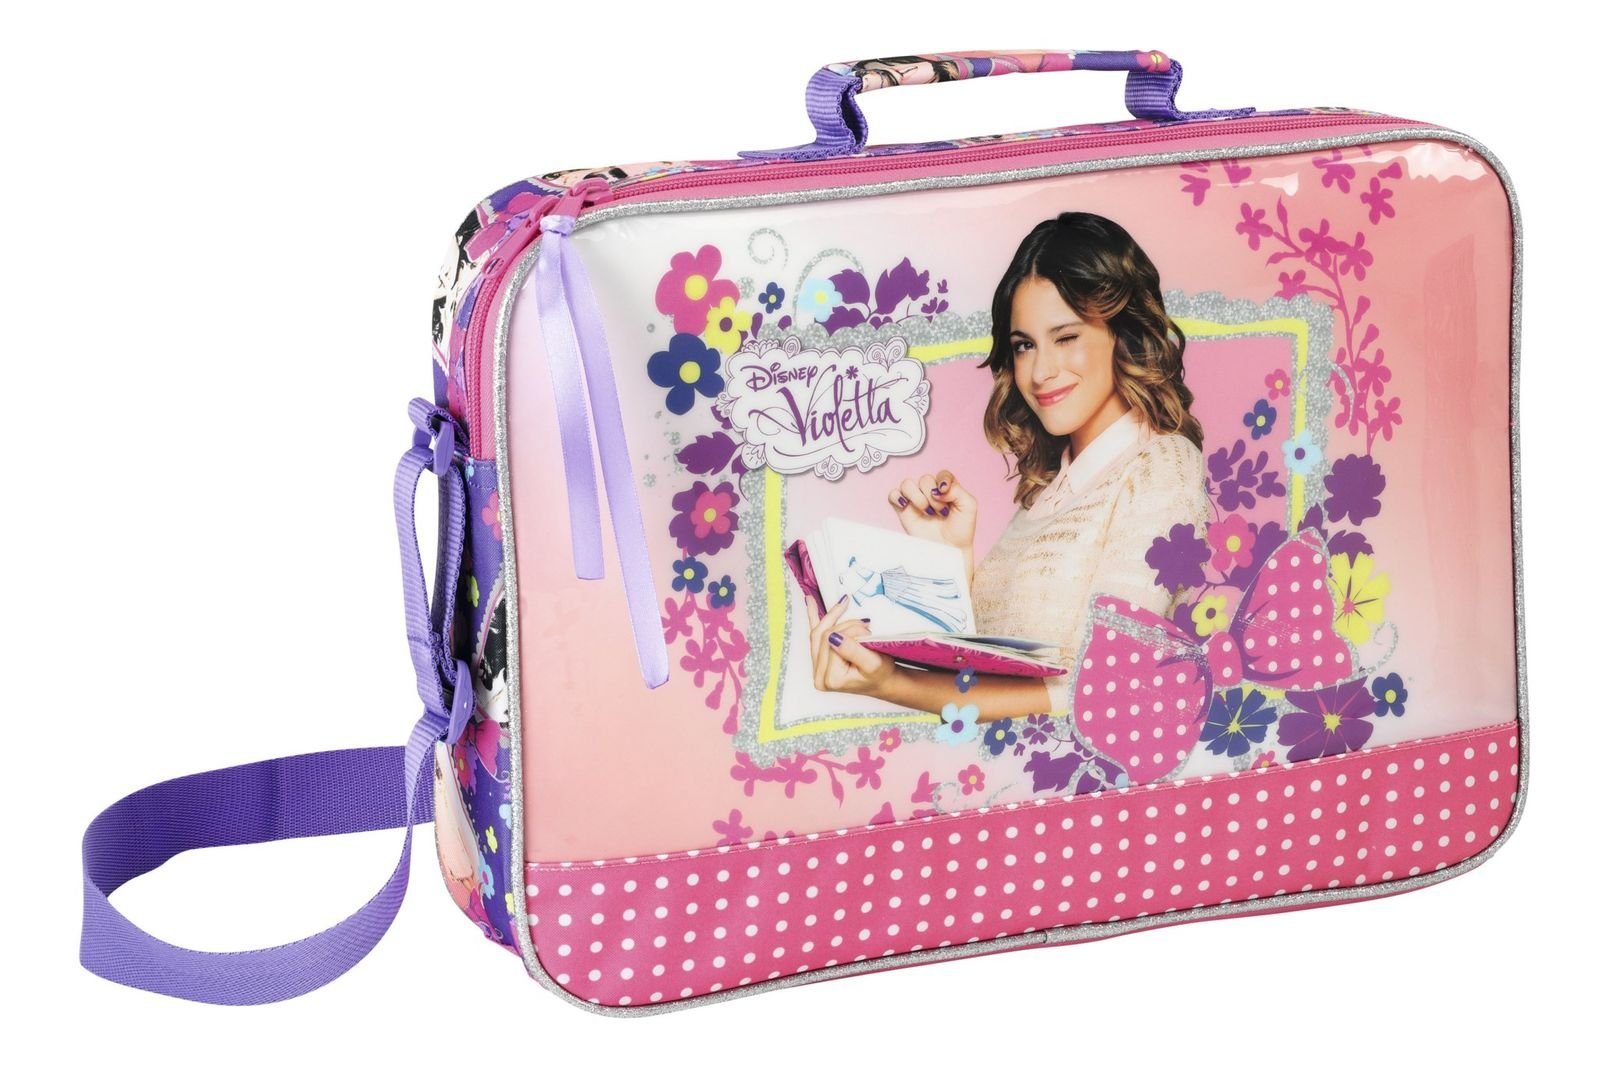 Spielzeug Kindertaschen Violetta Umhängetasche Disney Violetta - XL Schultertasche, 38 x 28 x 6 cm (Reißverschluss, Mädchen), Ge